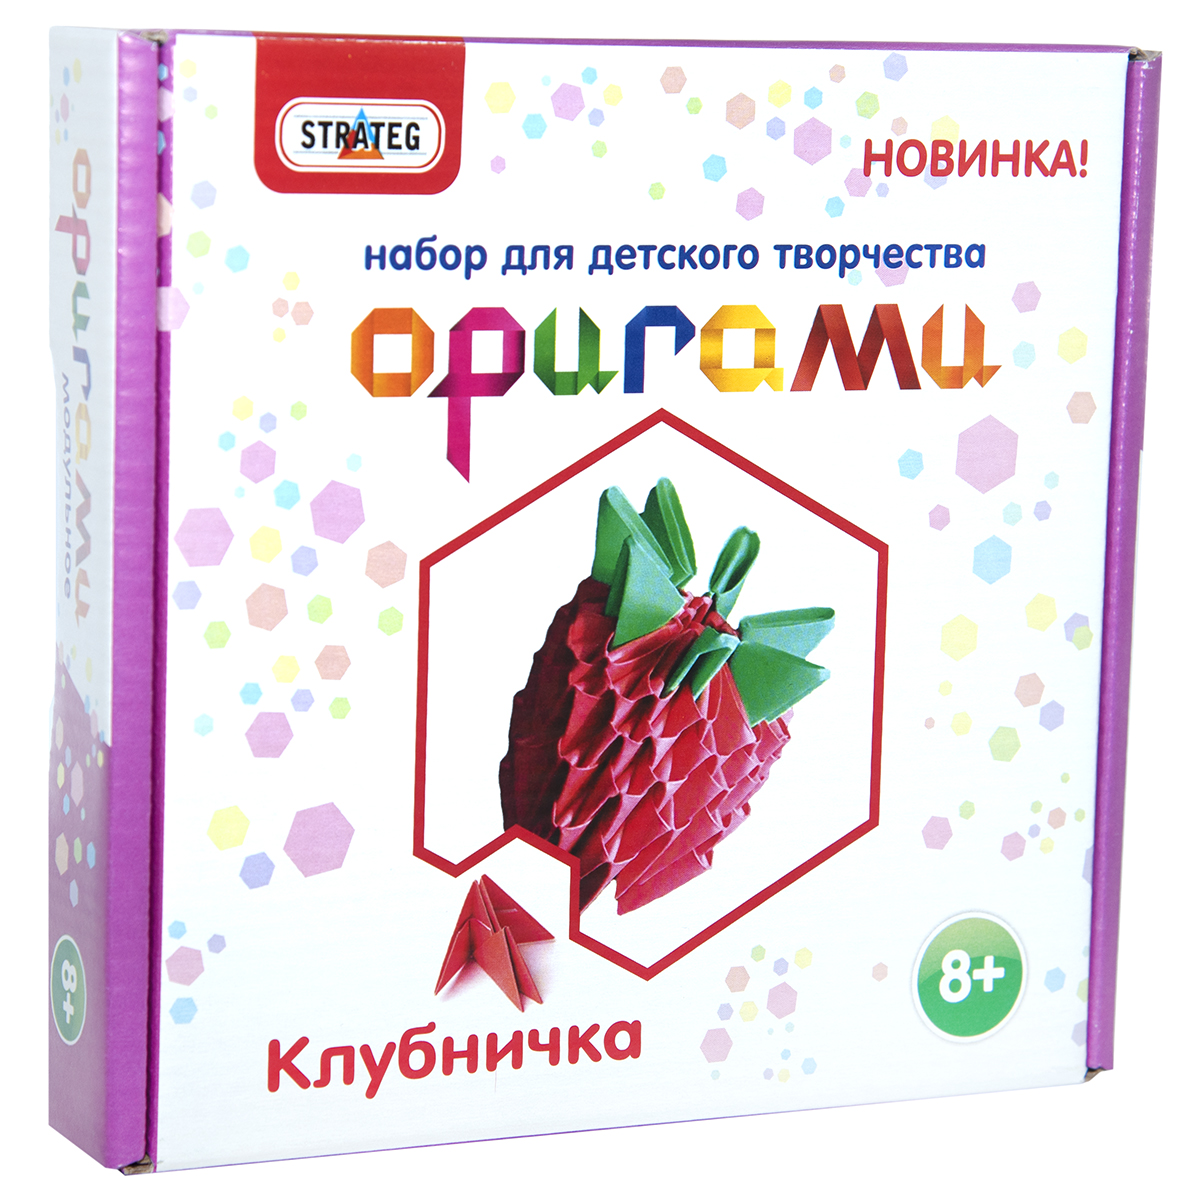 Модульное оригами Strateg Клубника на русском языке (203-10)